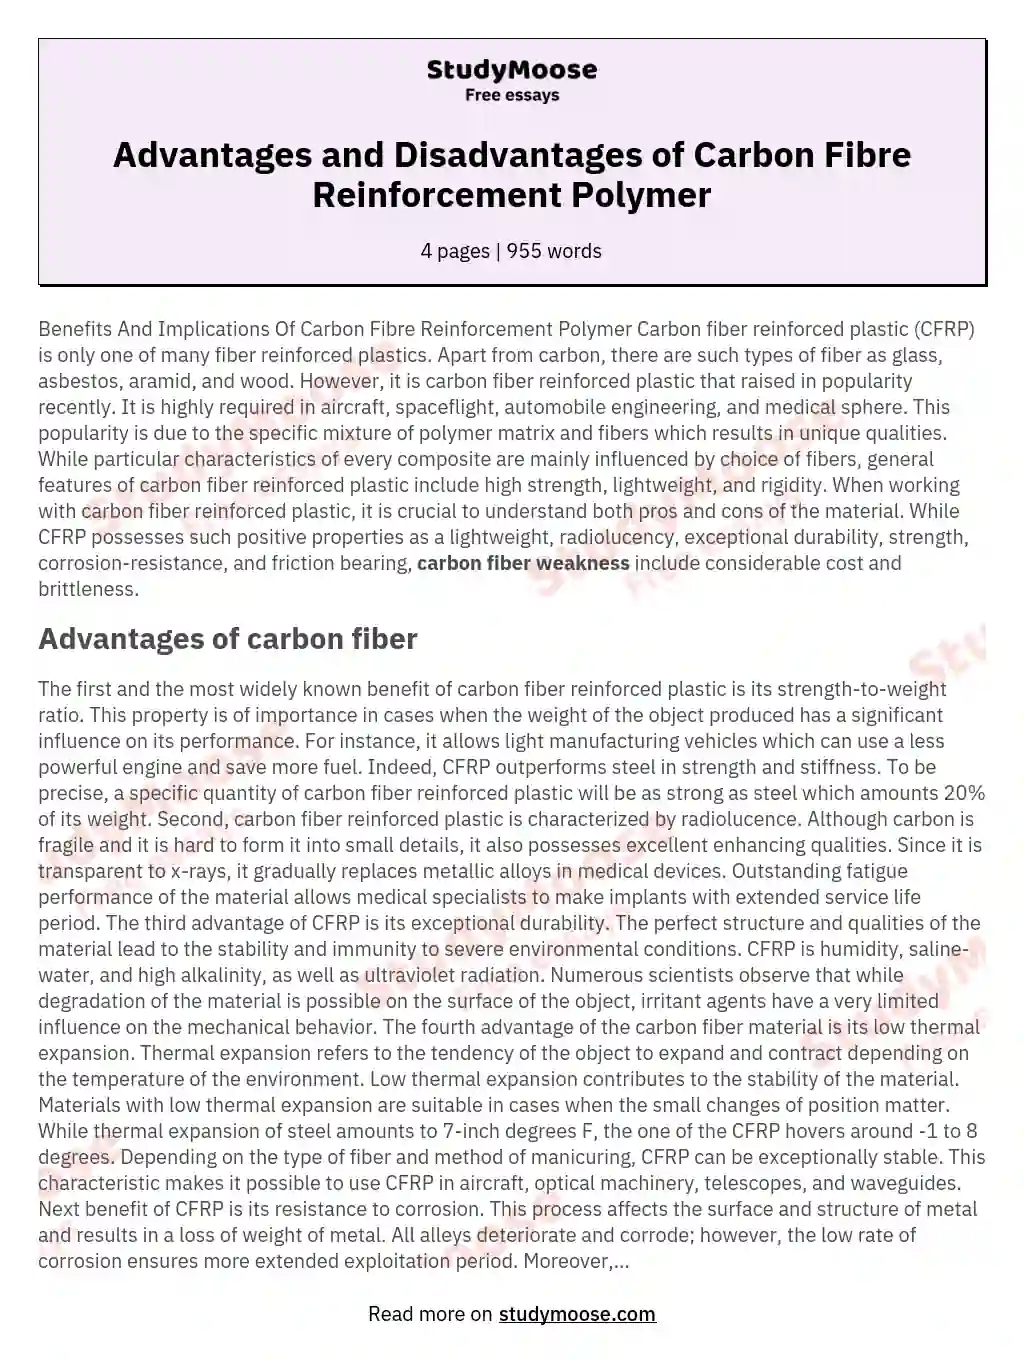 Advantages and Disadvantages of Carbon Fibre Reinforcement Polymer essay